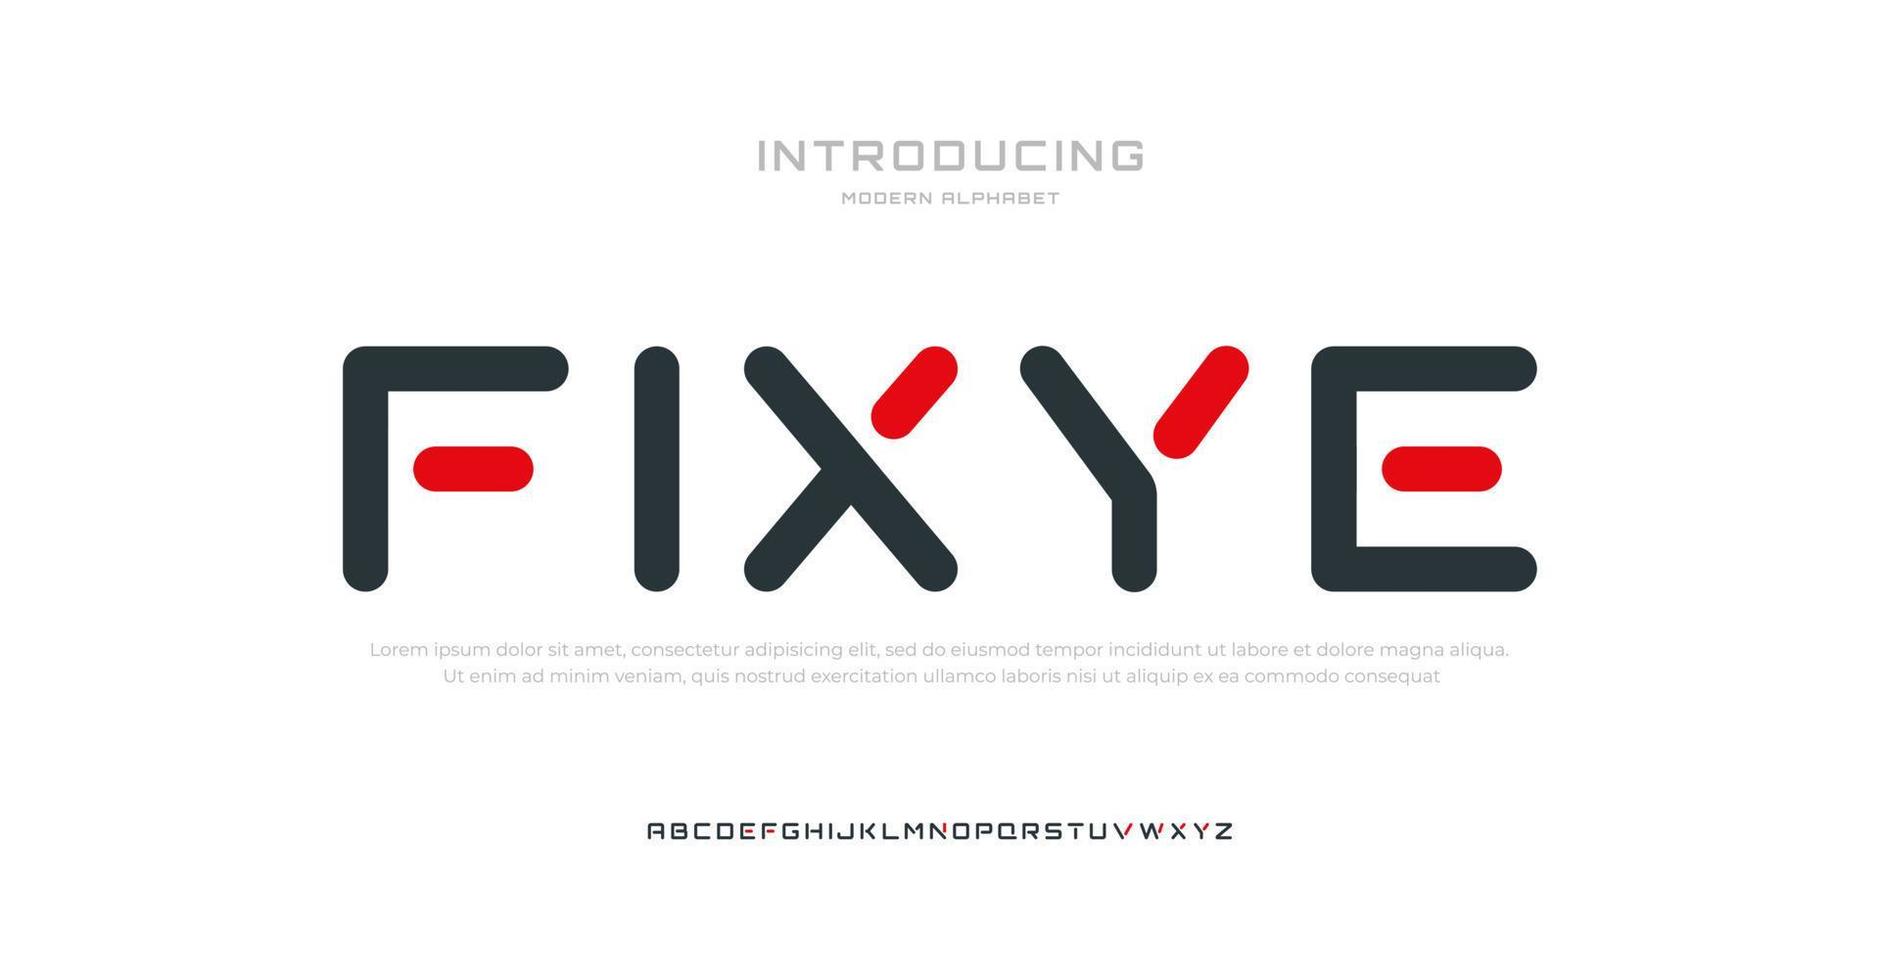 toekomstige moderne alfabet lettertype. typografie lettertypen in stedelijke stijl voor sport, technologie, digitaal, filmlogo-ontwerp vector